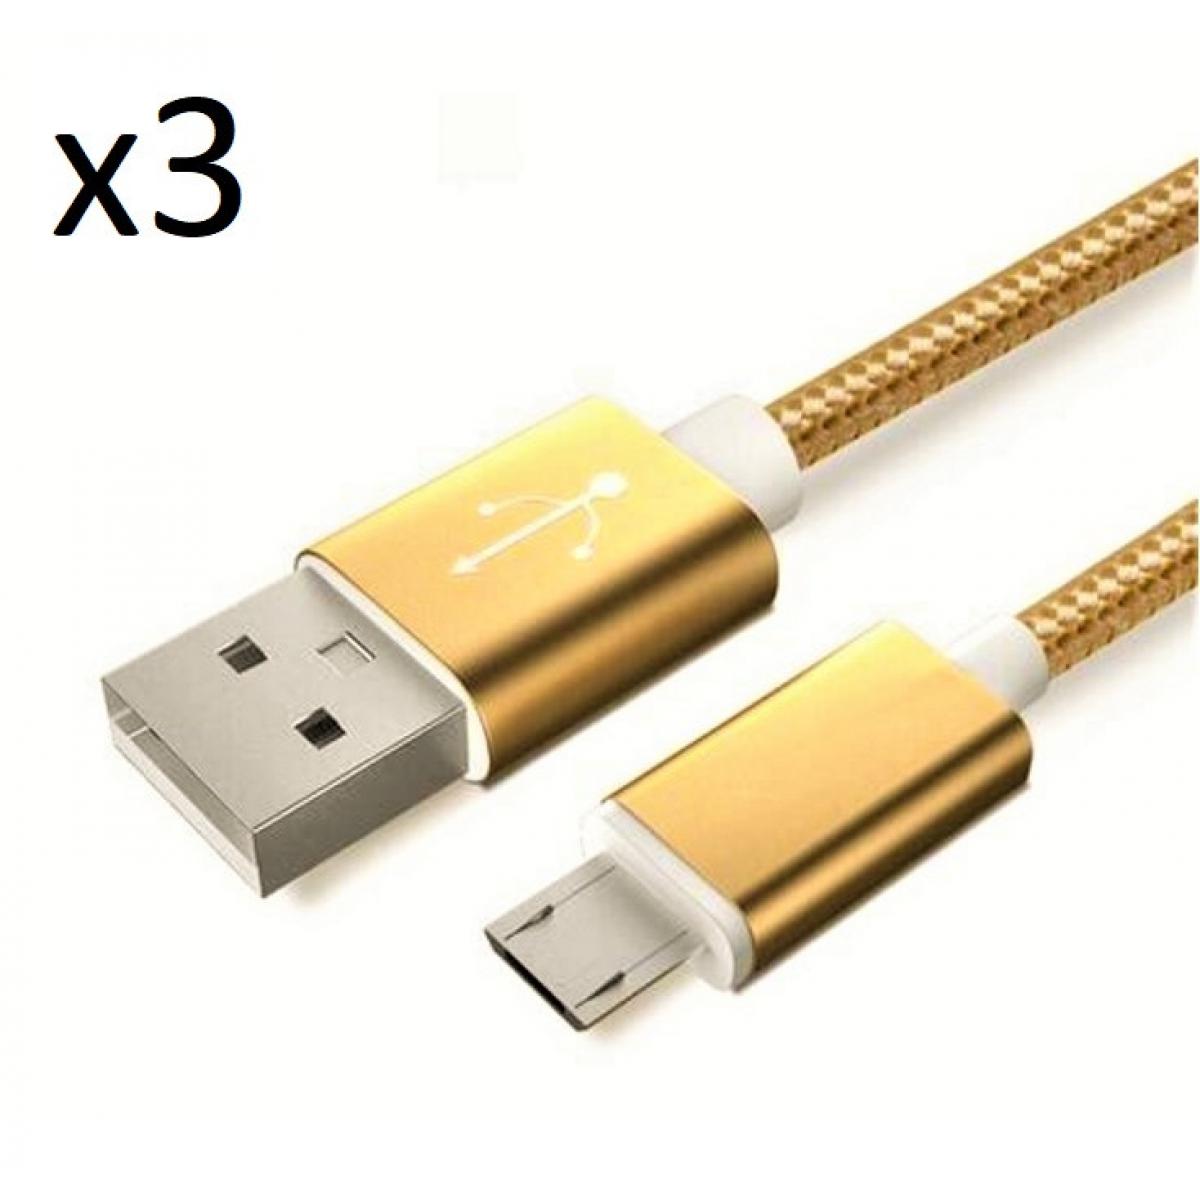 Shot - Pack de 3 Cables Metal Nylon Micro USB pour XIAOMI Redmi 7A Smartphone Android Chargeur (OR) - Chargeur secteur téléphone